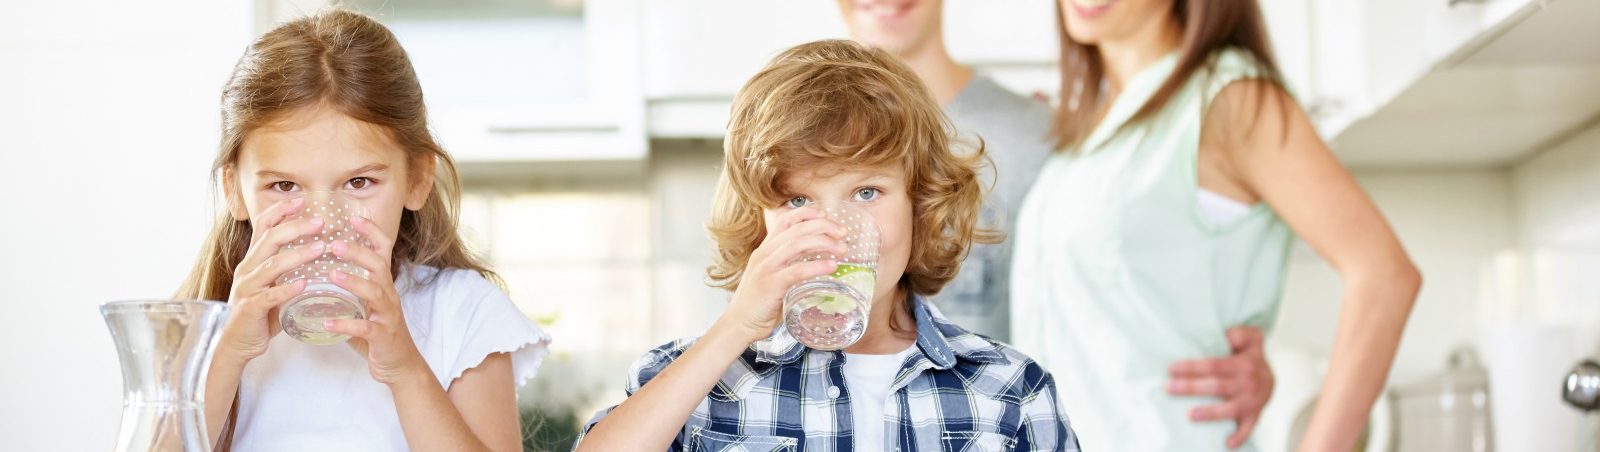 Kinder trinken Leitungswasser